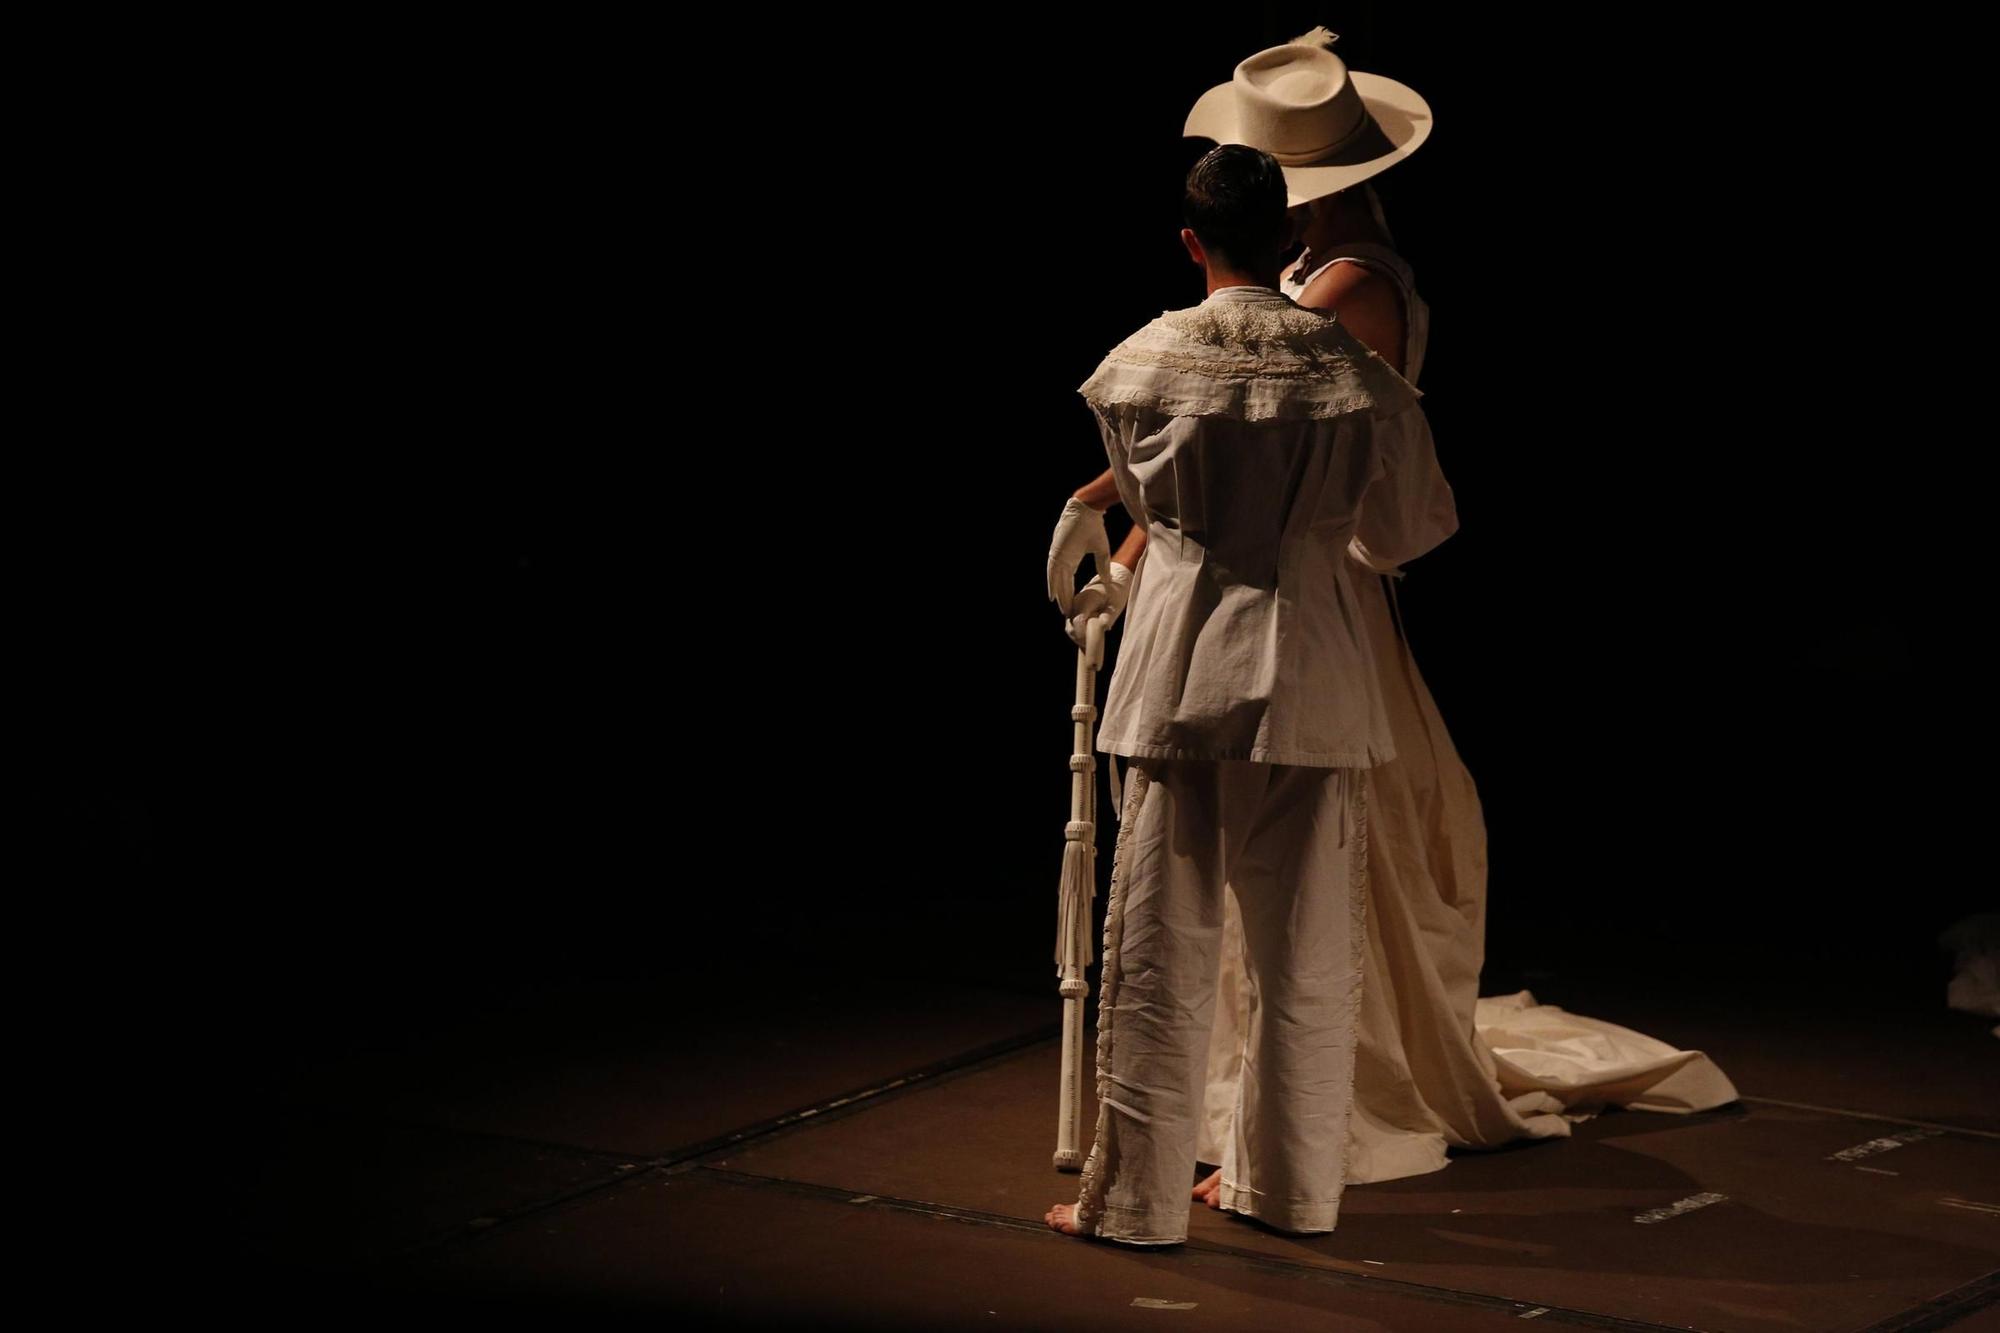 Santi Senso lleva a su Don Quijote flamenco al Clásico